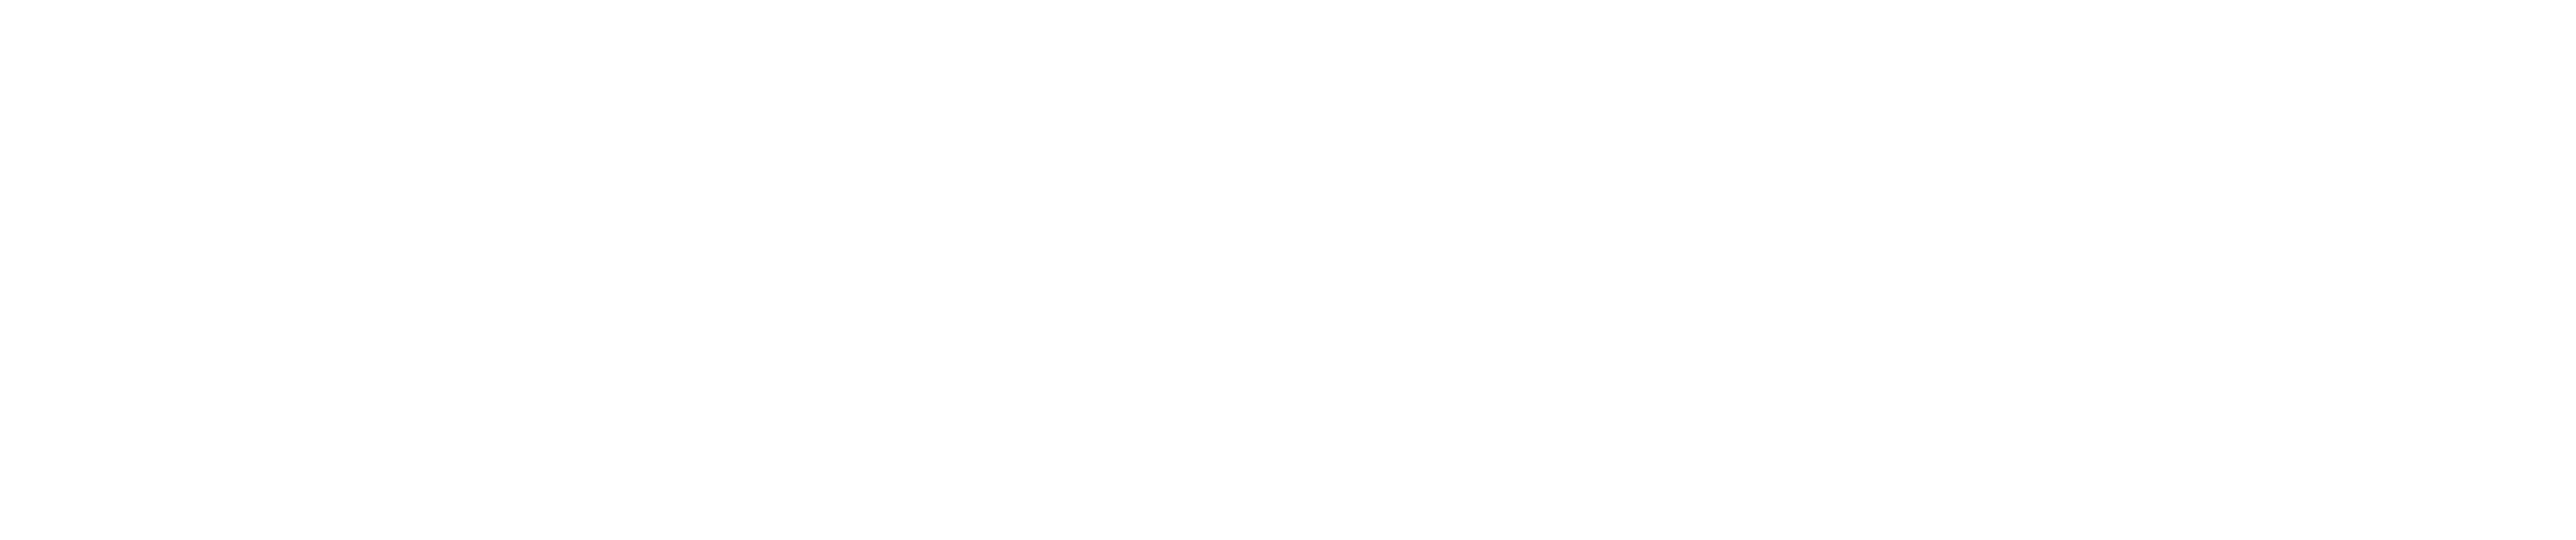 es_cofinanciado_por_la_union_europea_white